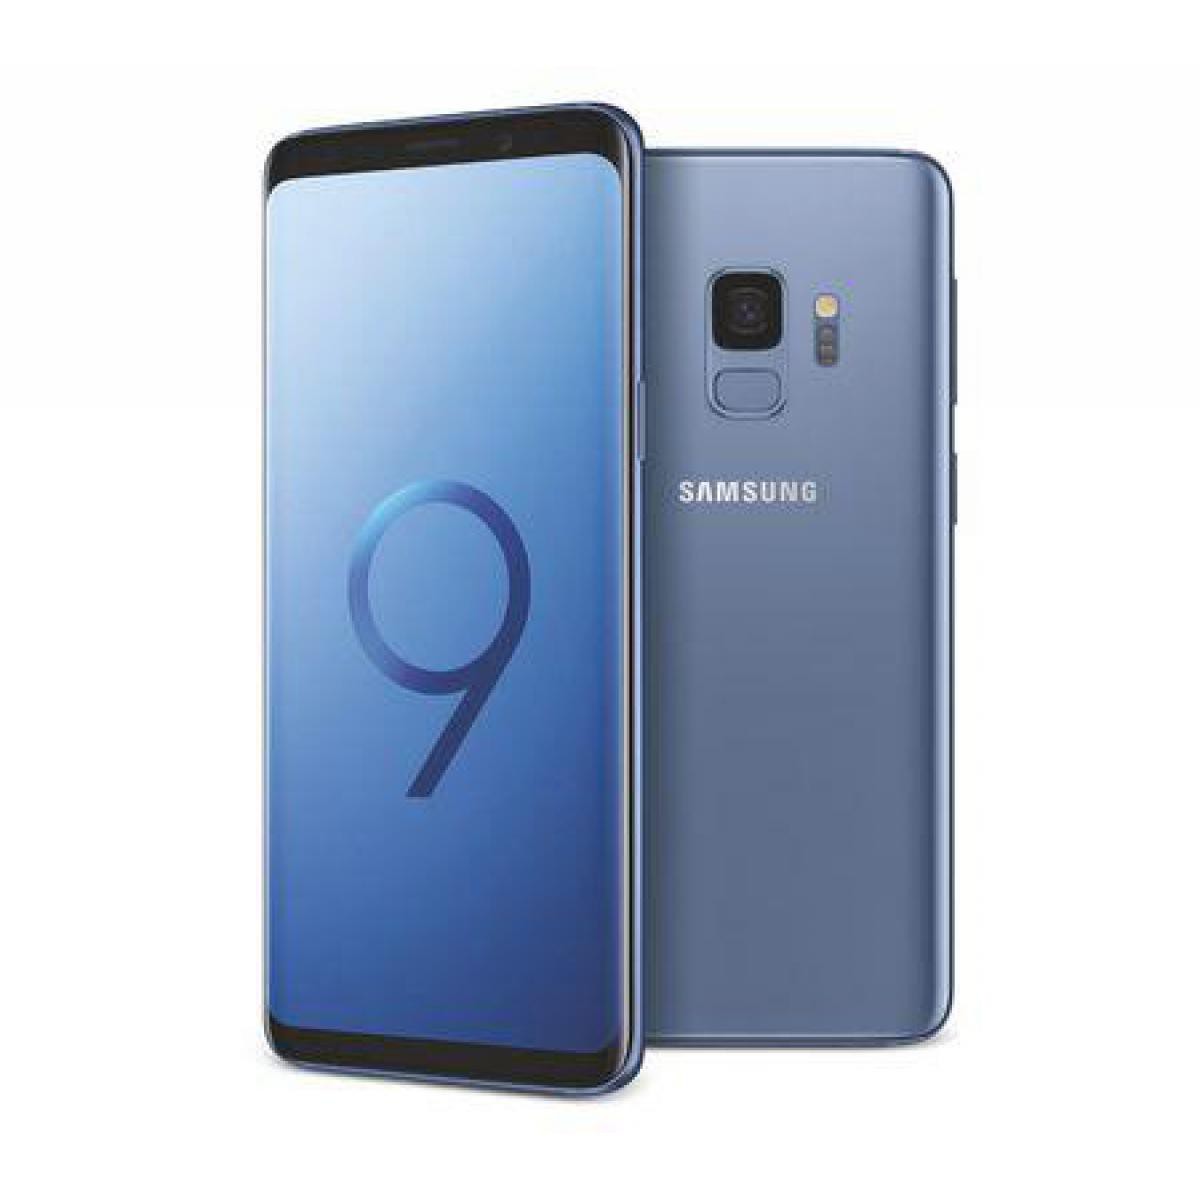 Samsung - Samsung Galaxy S9 64 Go Bleu - débloqué tout opérateur - Smartphone Android